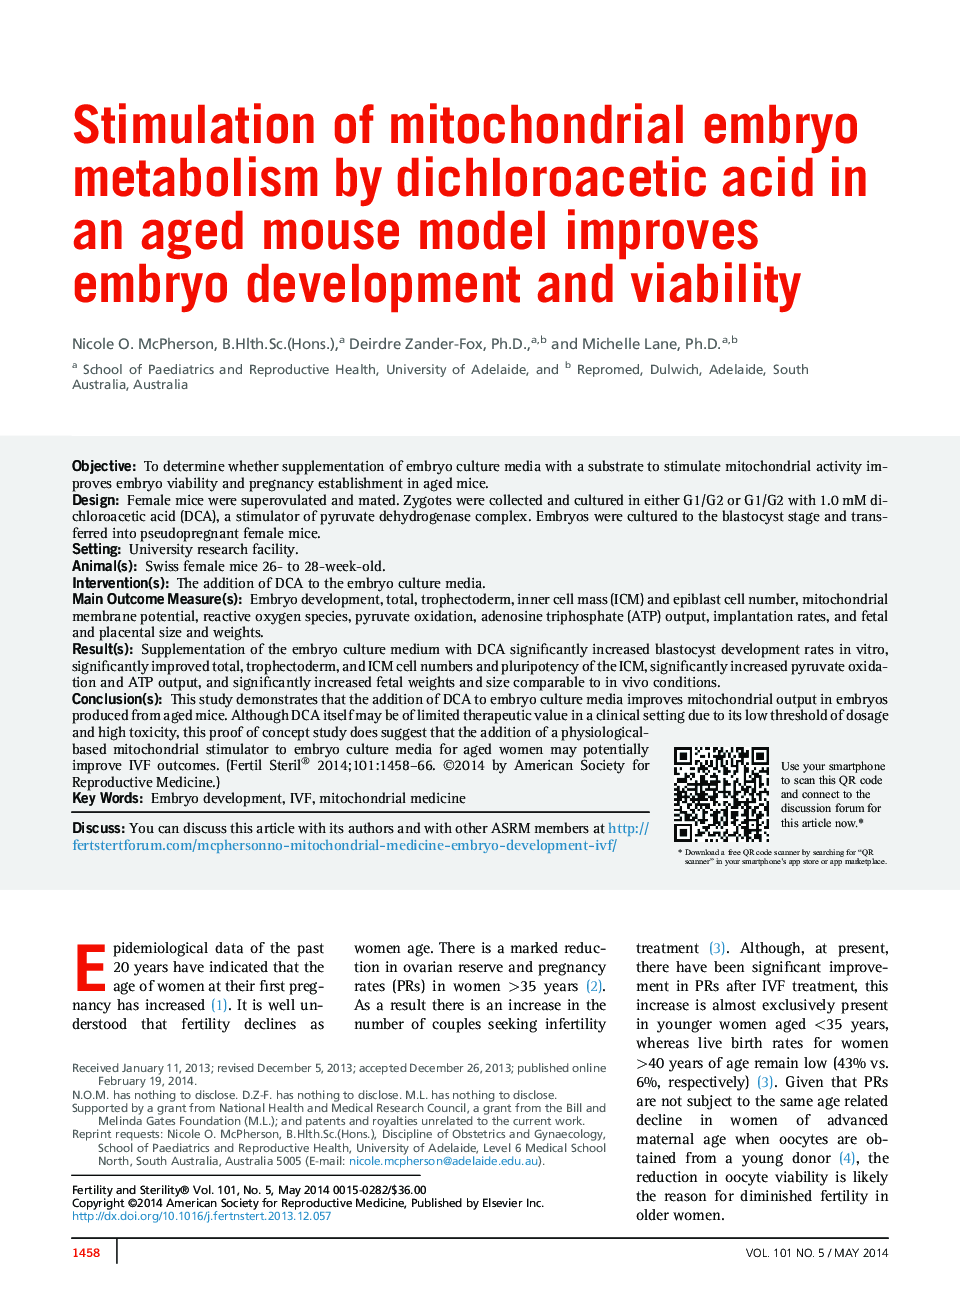 تحریک متابولیسم جنینی میتوکندری توسط اسید دیکلوئوتساکیتیک در مدل موش سالمی، رشد جنین و زنده ماندن را بهبود می بخشد 